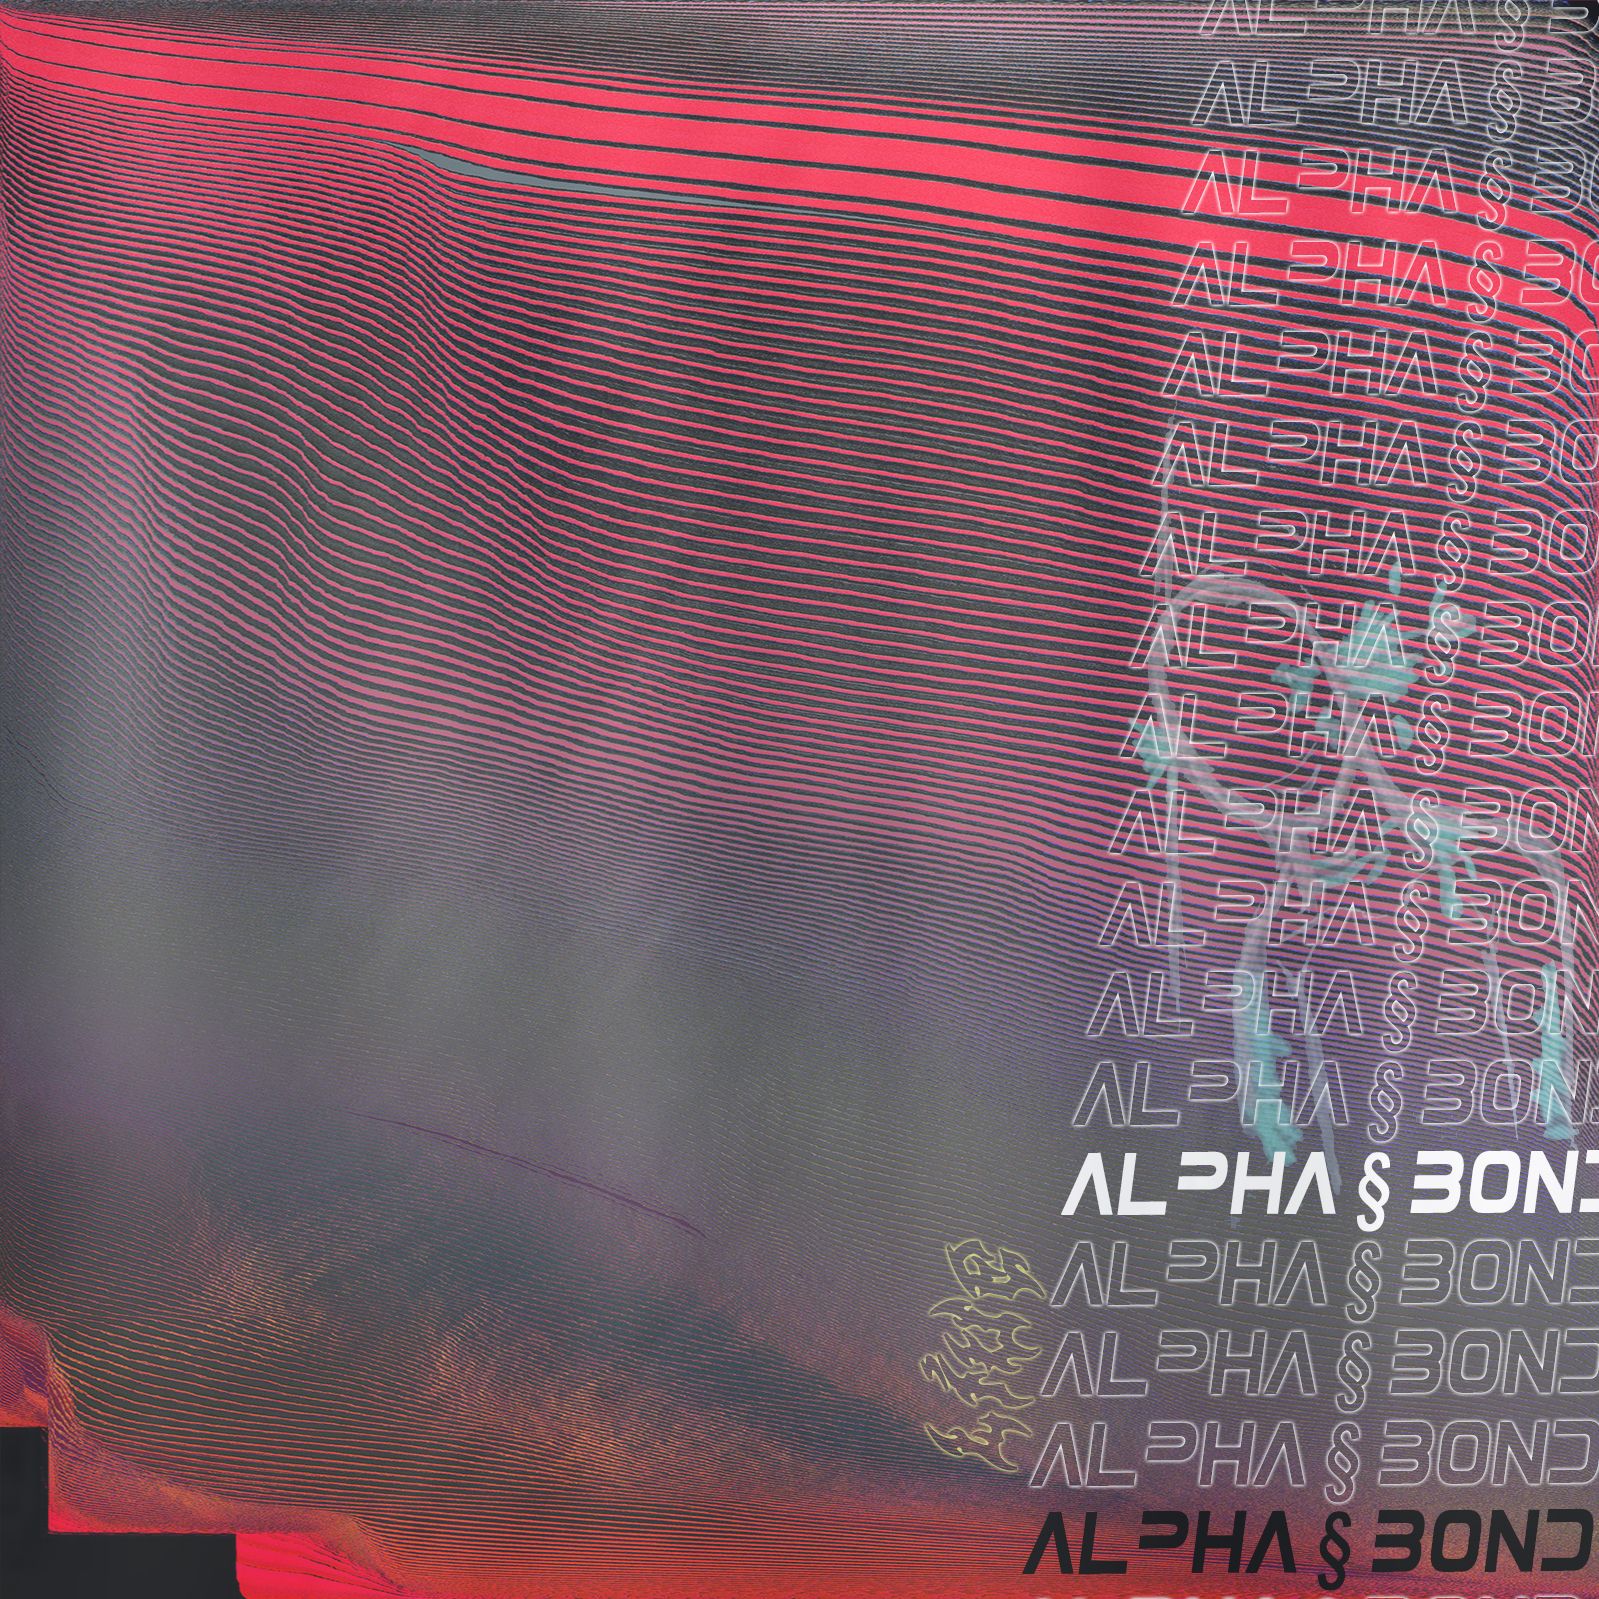 ডাউনলোড করুন alpha § bond